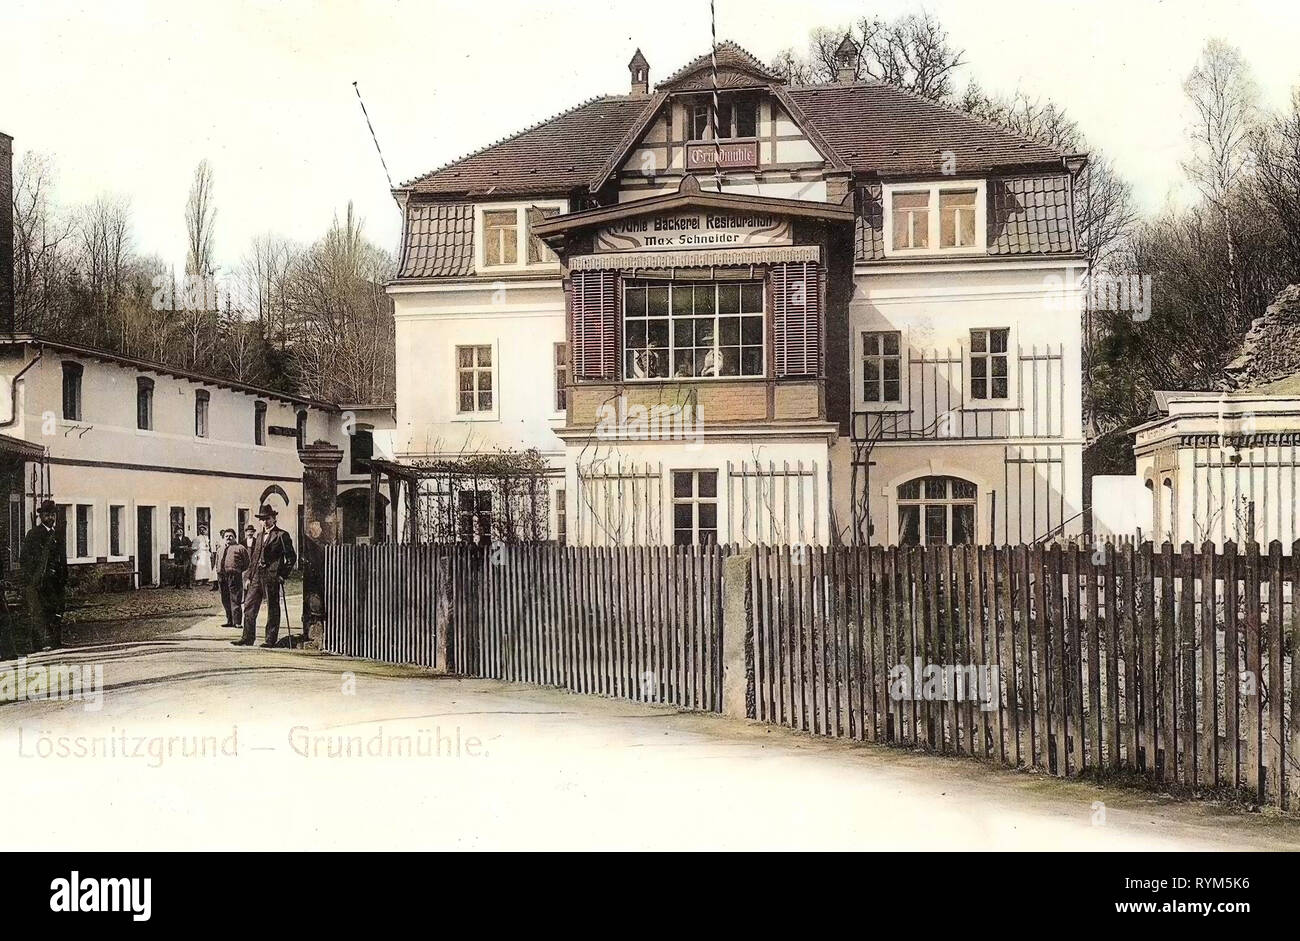 Grundmühle, 1903, Landkreis Meißen, Lößnitzgrund, Germany Stock Photo